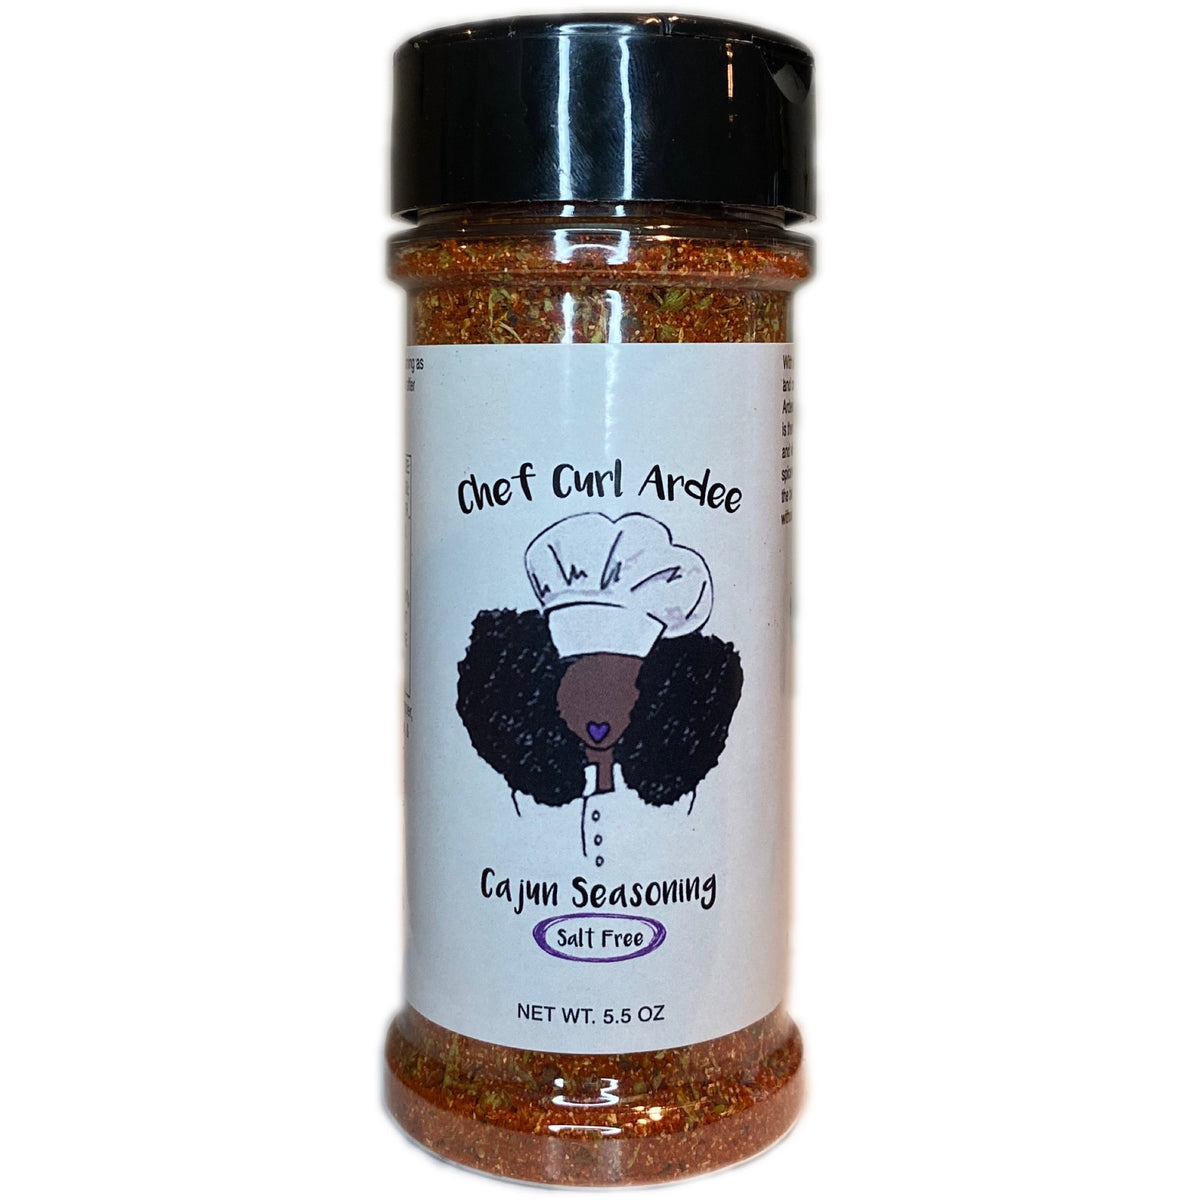 Cajun spices without salt